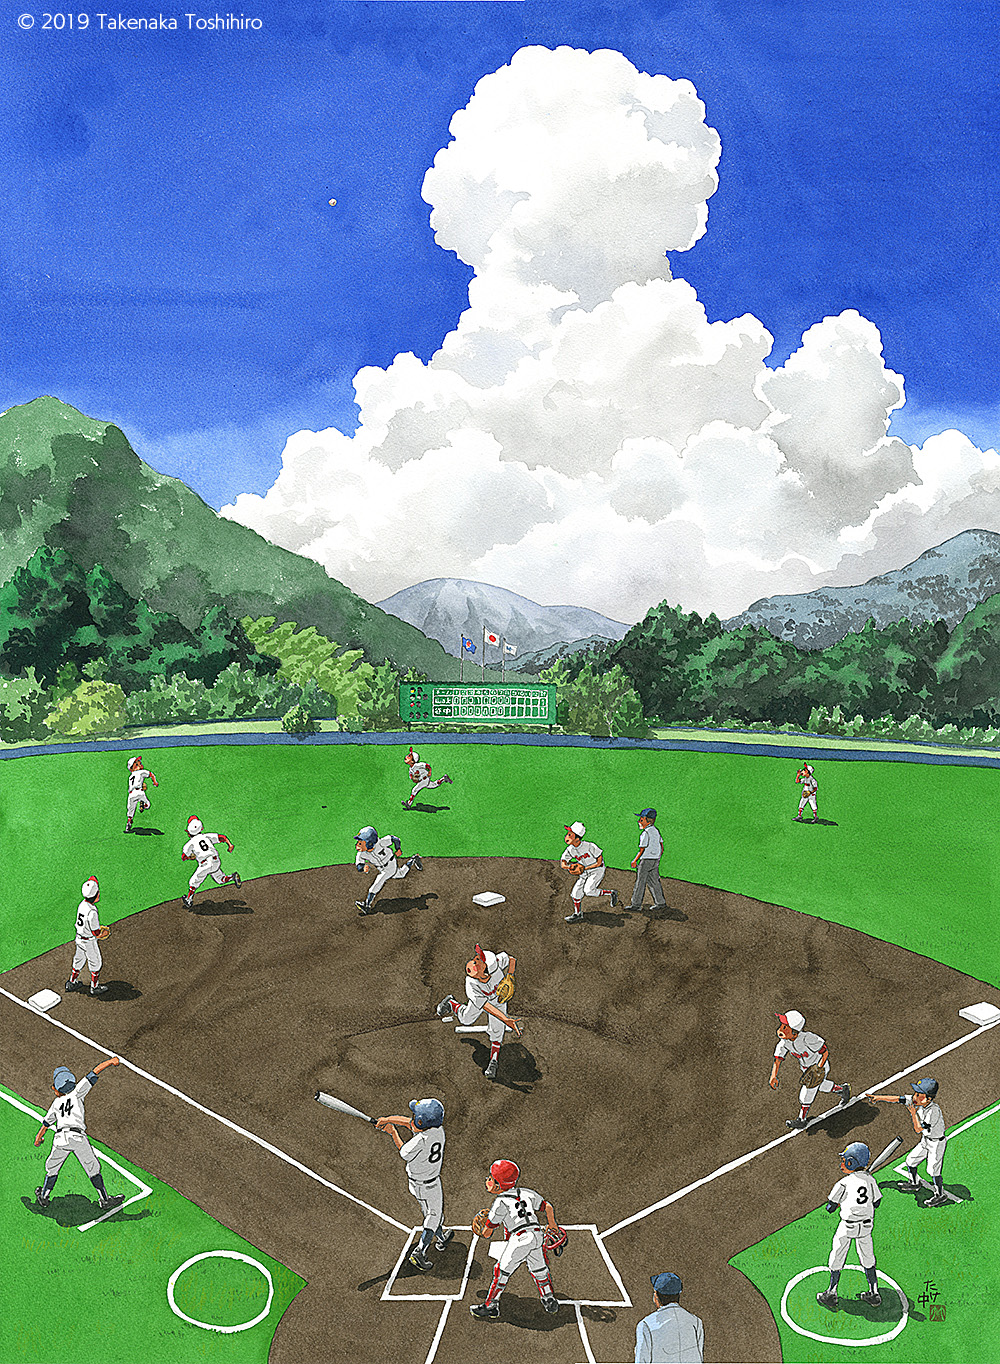 夏の全国高校野球地方大会で山の中の球場で大きな入道雲に向かって大きな打球が飛んでいく